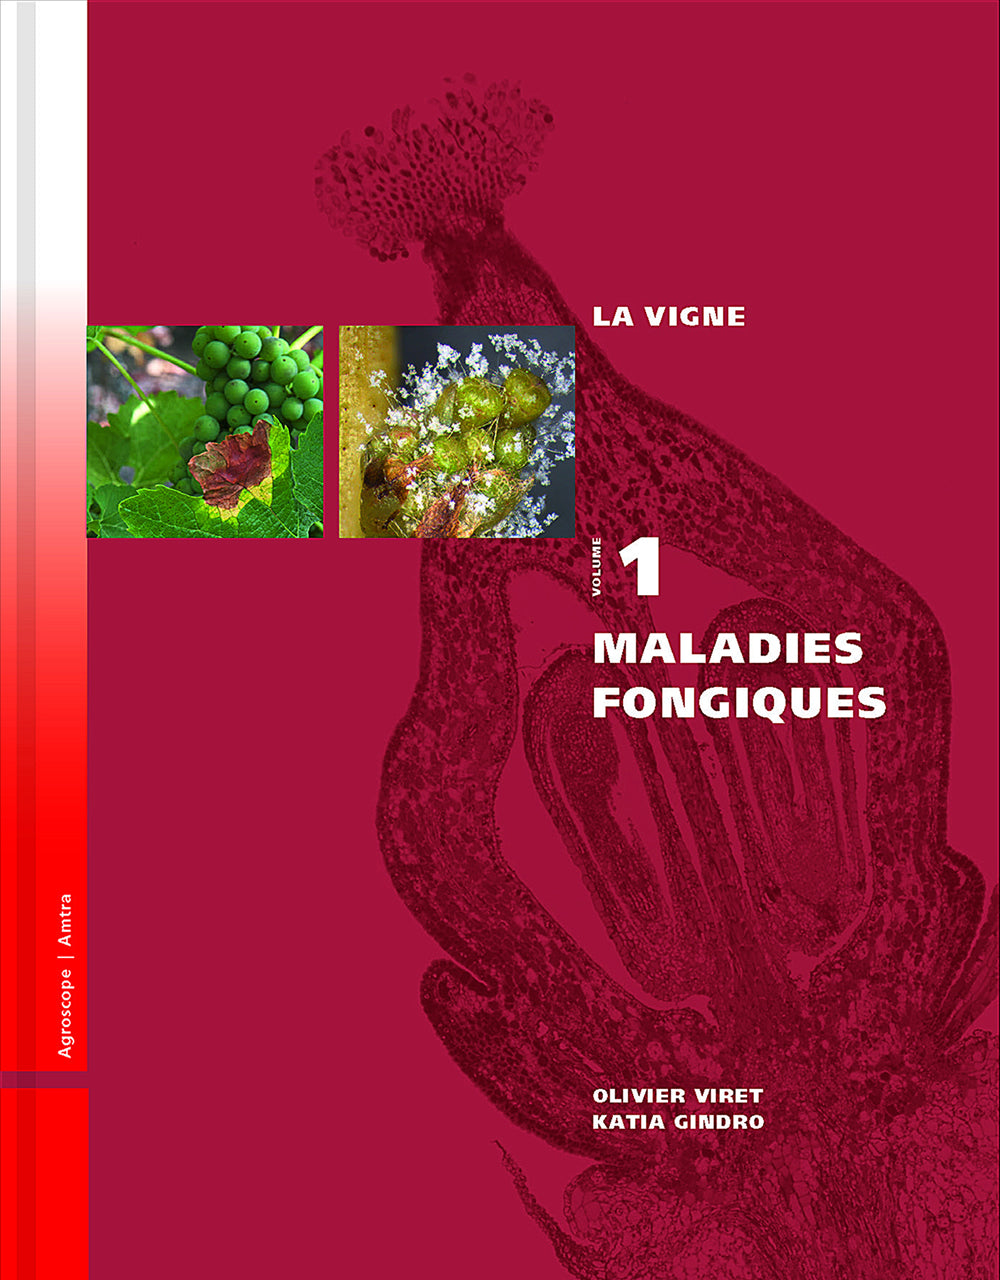 La vigne: Volume 1, Maladies fongiques